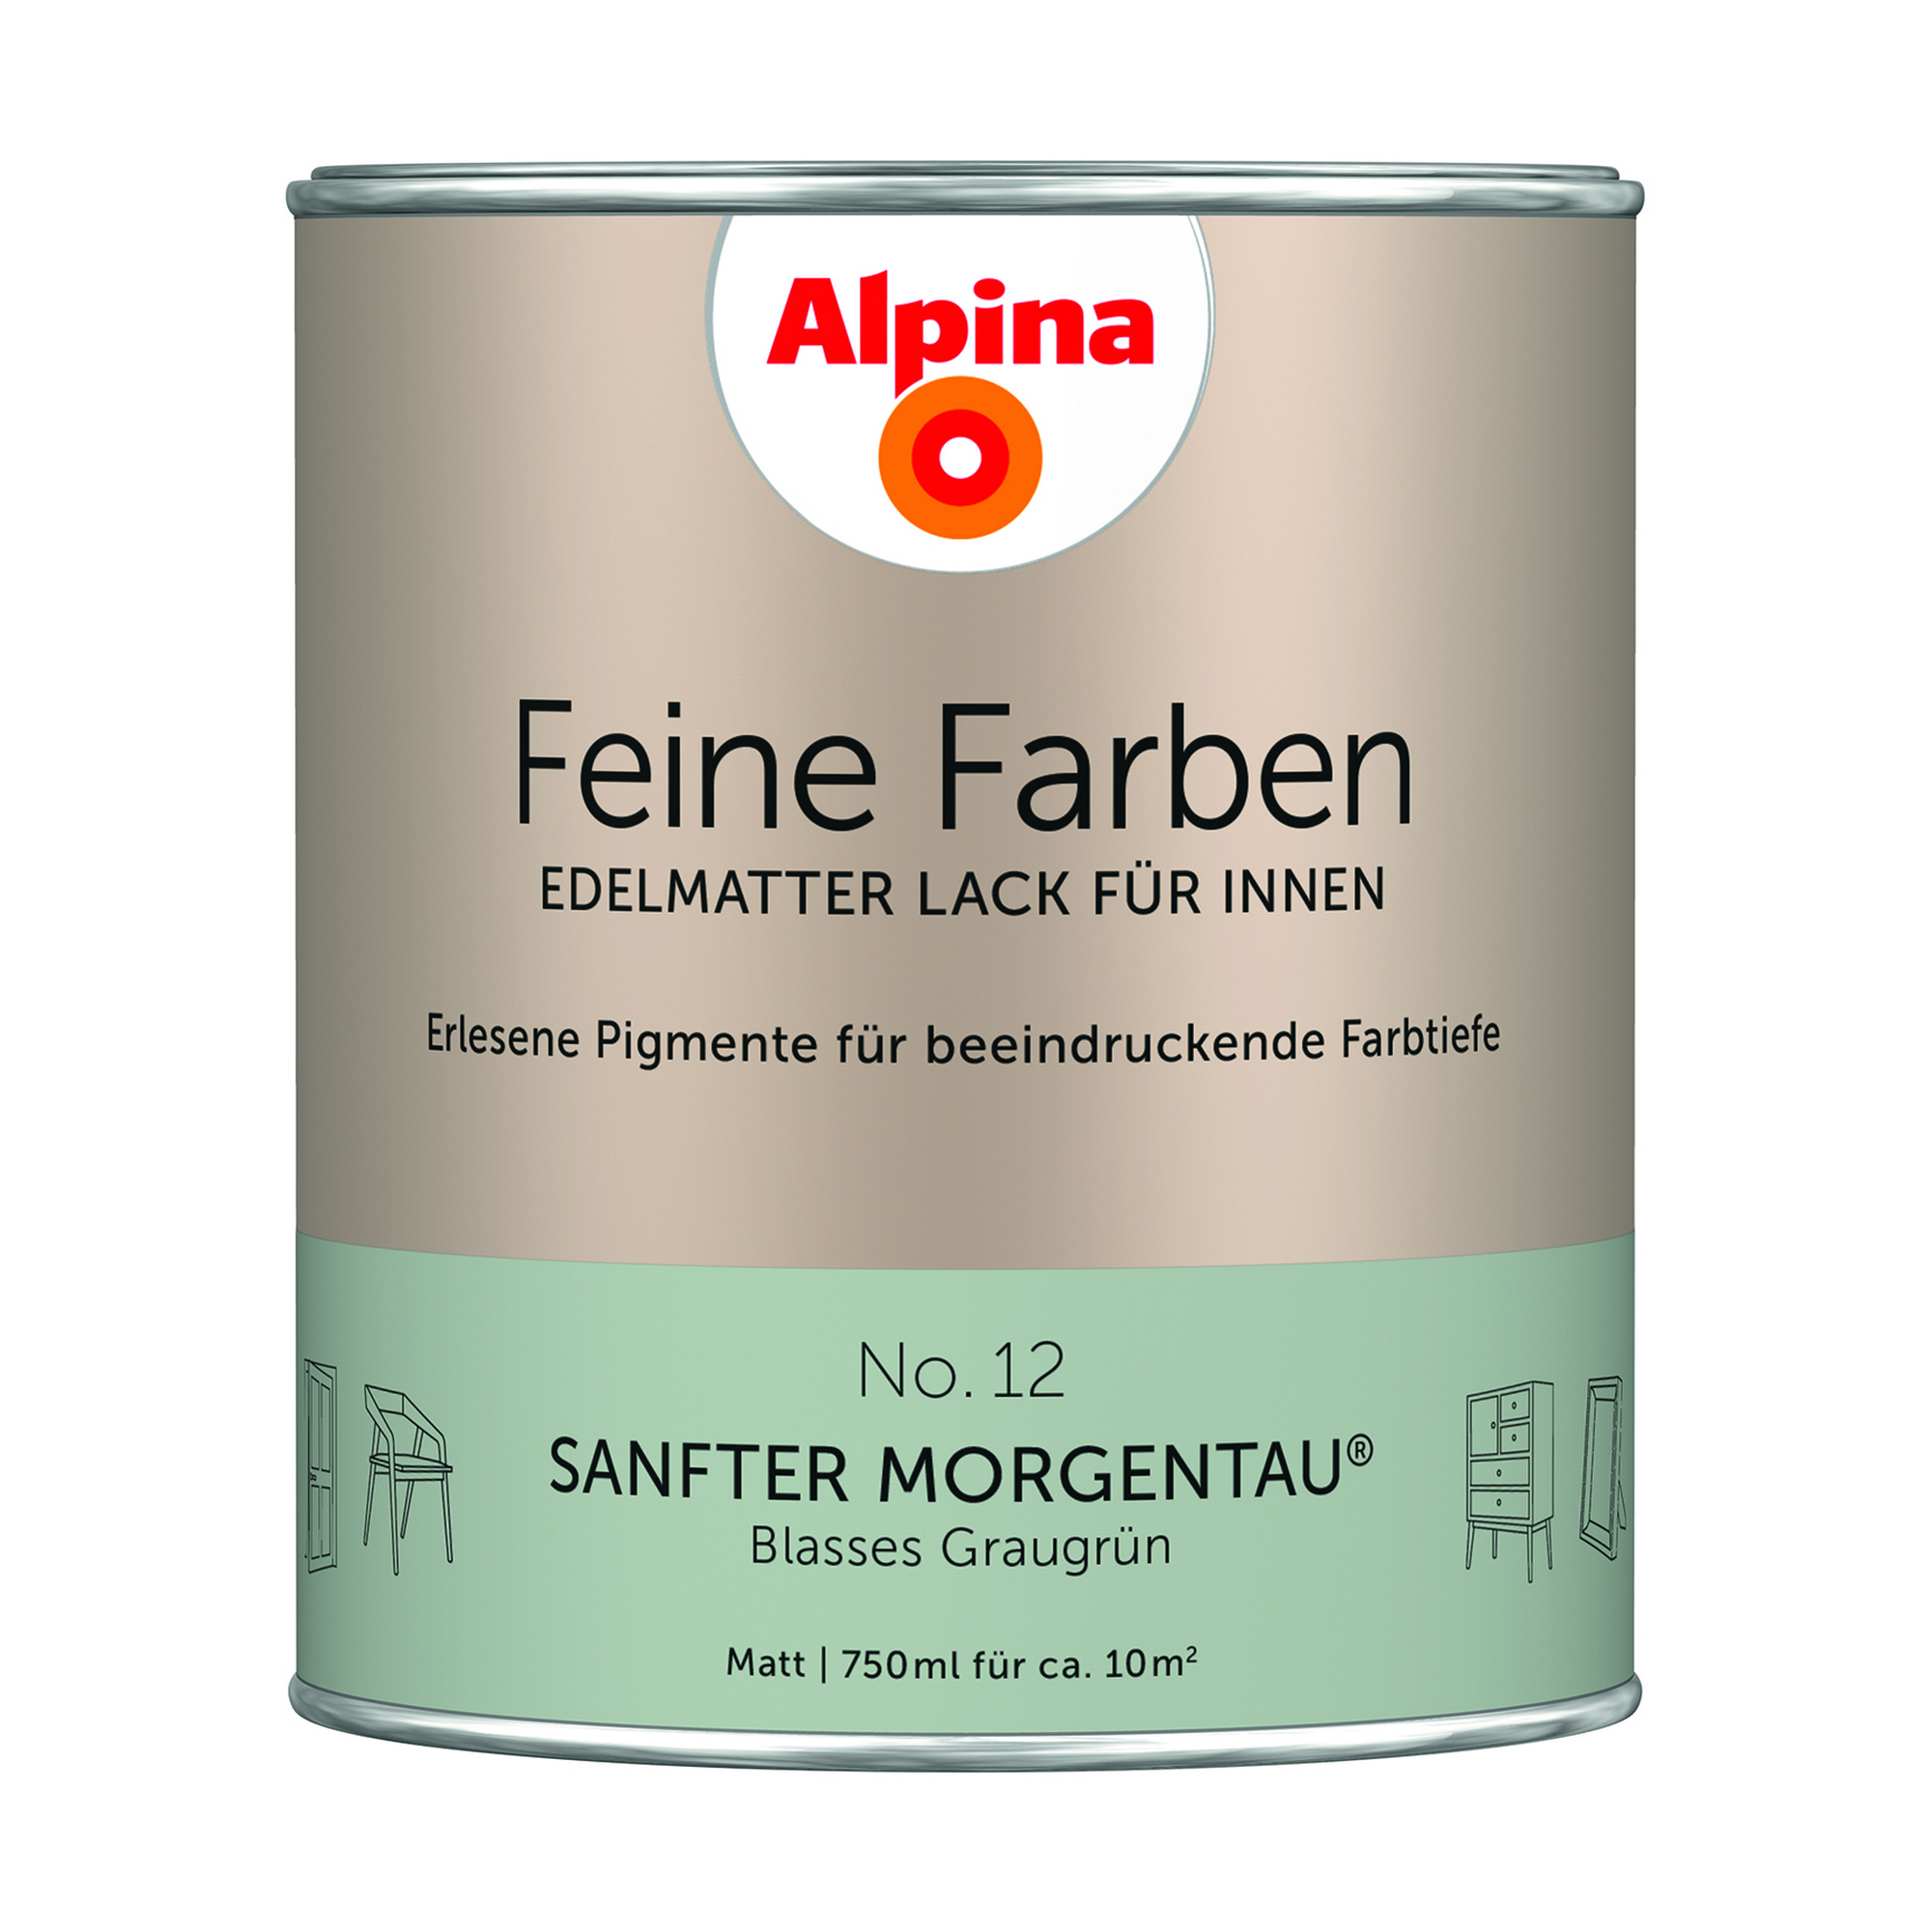 Feine Farben 'Sanfter Morgentau' graugrün matt 750 ml + product picture